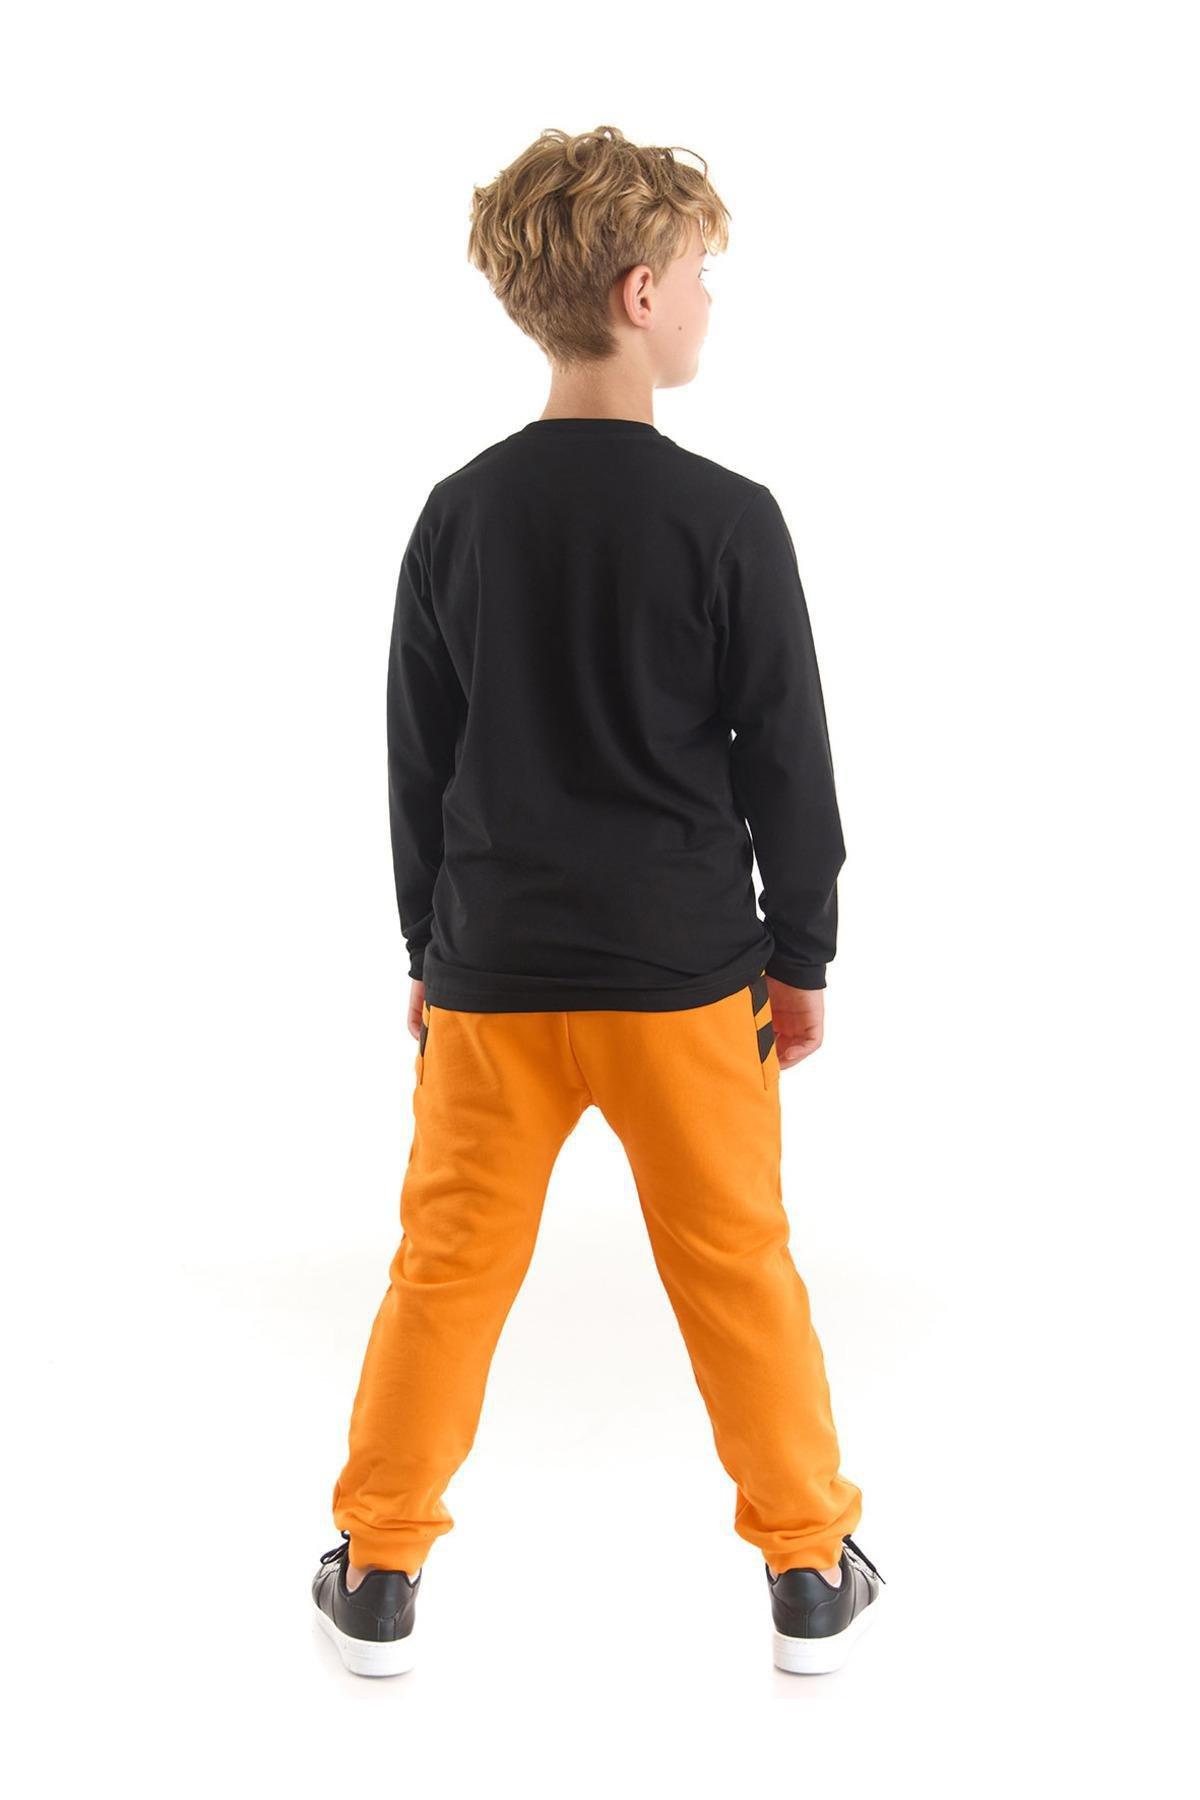 Denokids - Multicolour Printed Pyjamas Set, Kids Boys